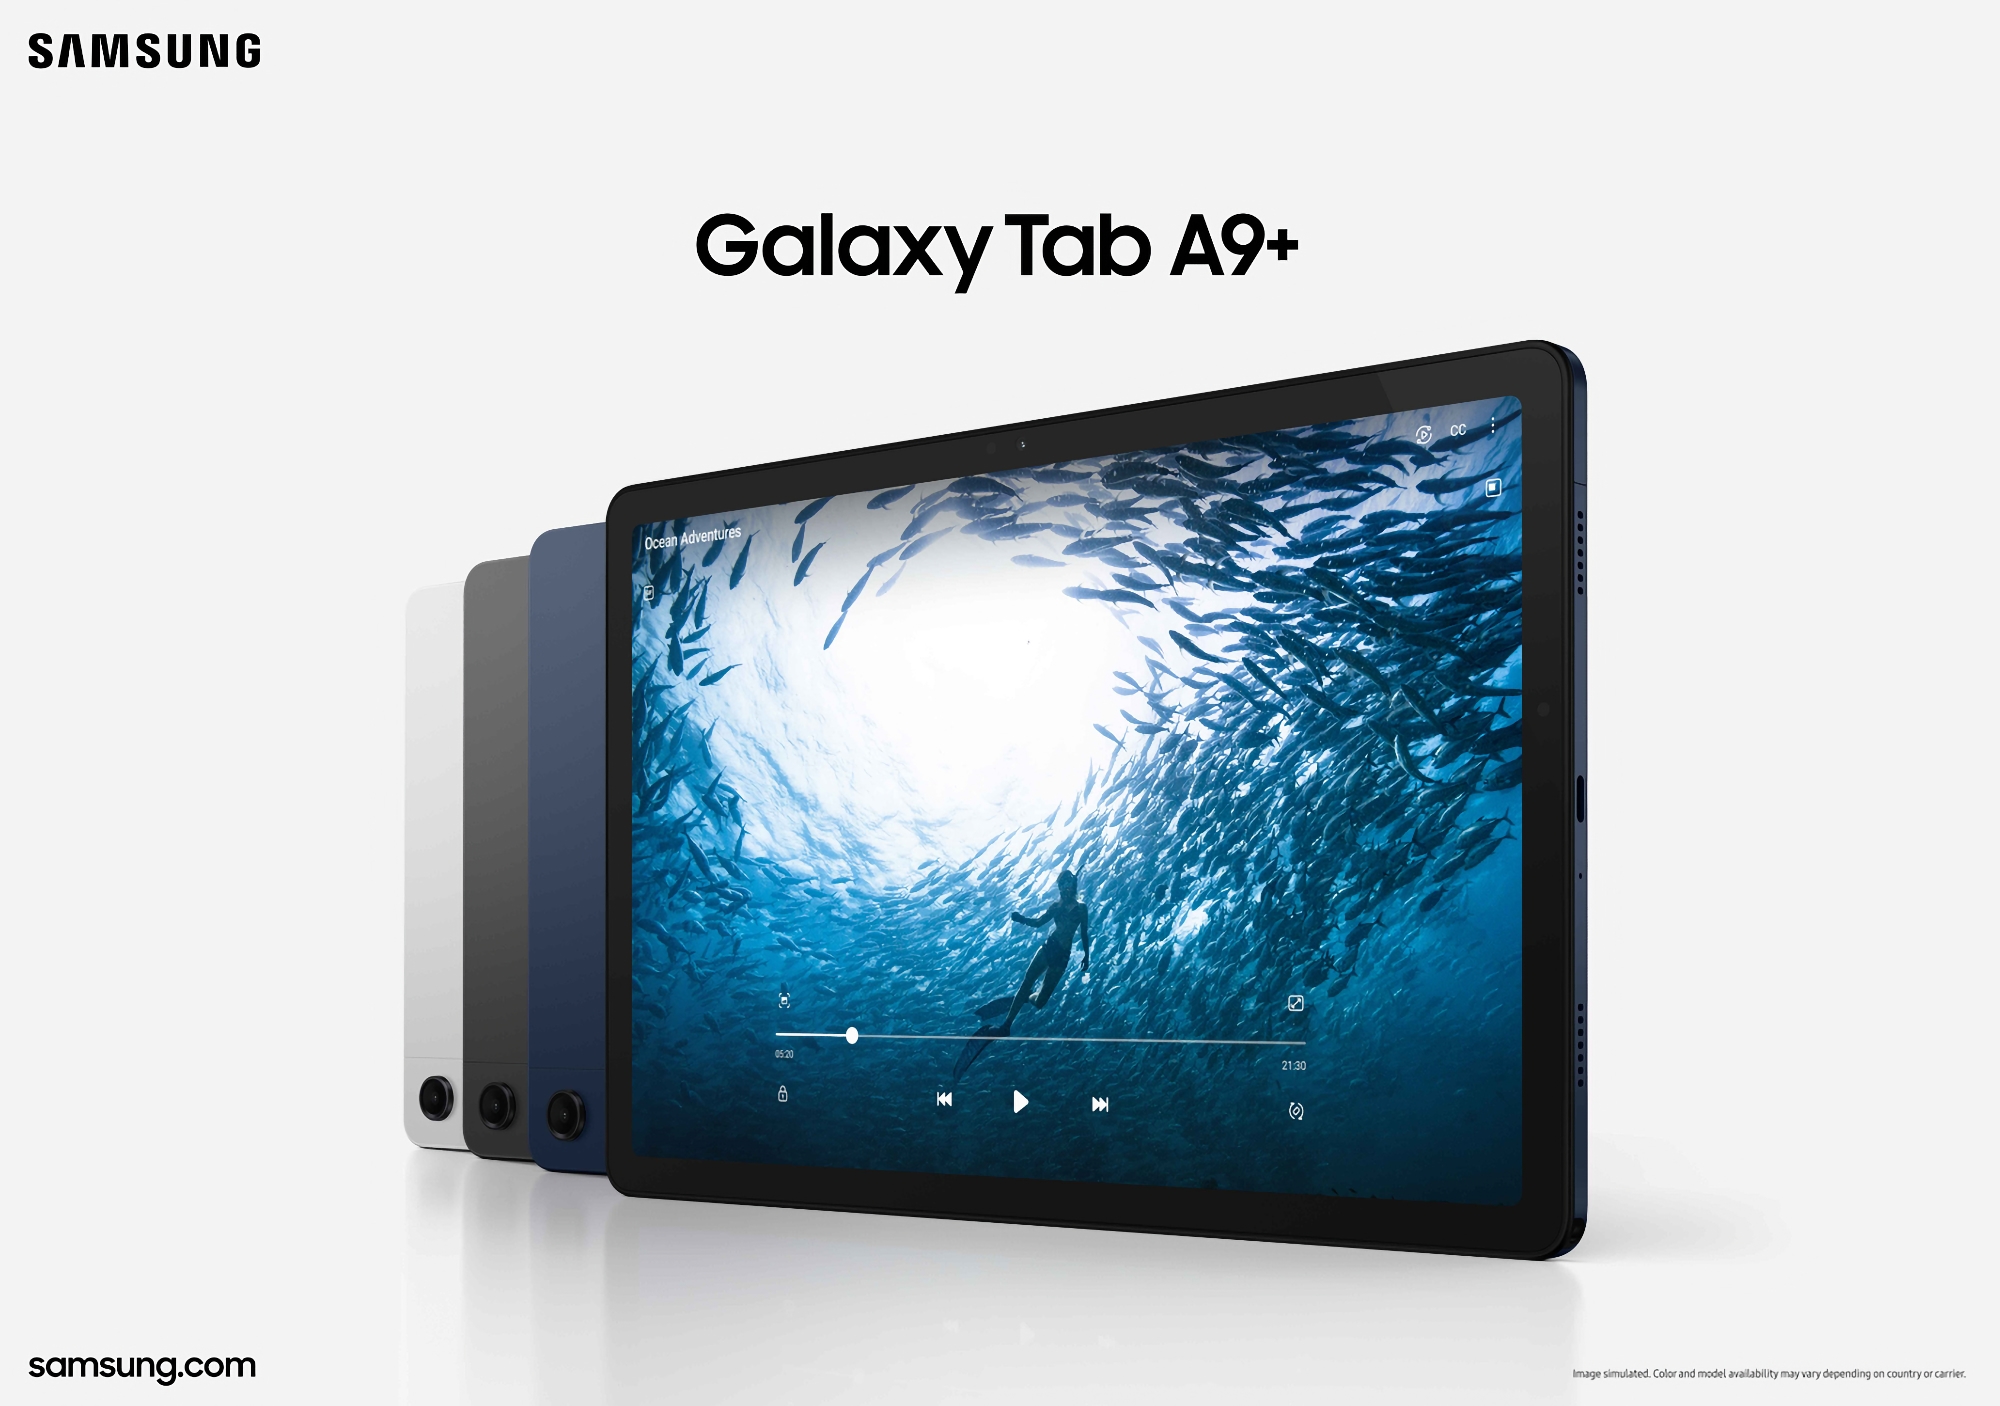 11-Zoll-Samsung Galaxy Tab A9+ kann auf Amazon für weniger als 200 Dollar gekauft werden